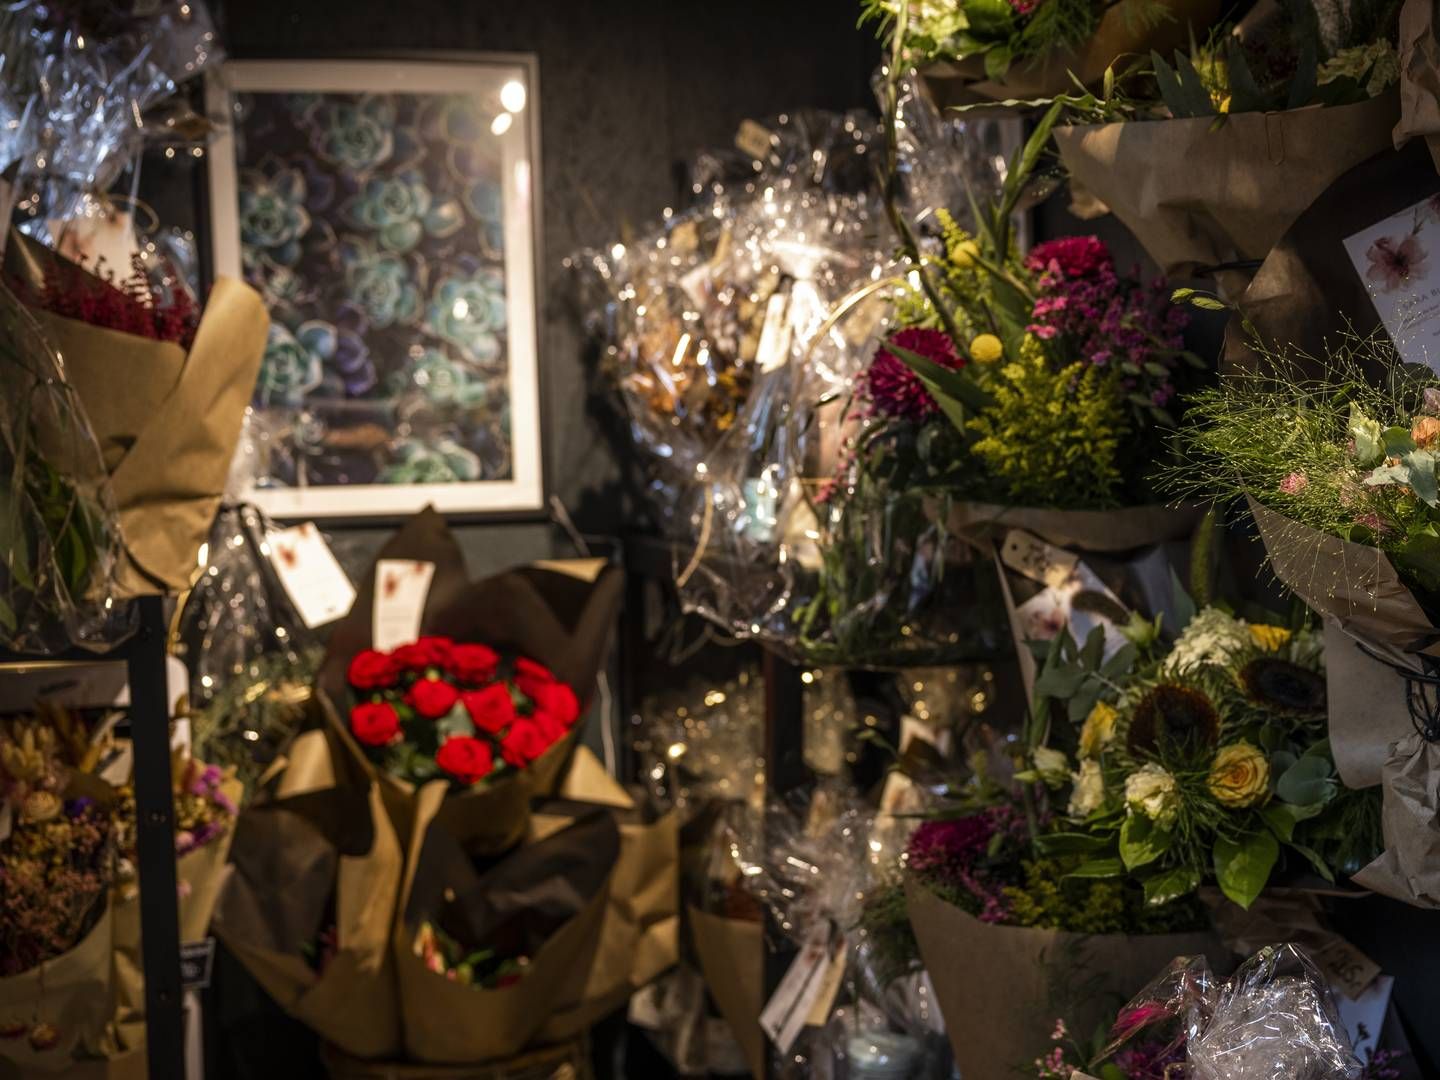 Blomsterhuset Ramdal dropper igen muligheden for selvbetjening i butikkerne i Tørring og Hedensted. Men indehaveren nævner en automat som en fremtidig mulighed. | Foto: Marcus Emil Christensen